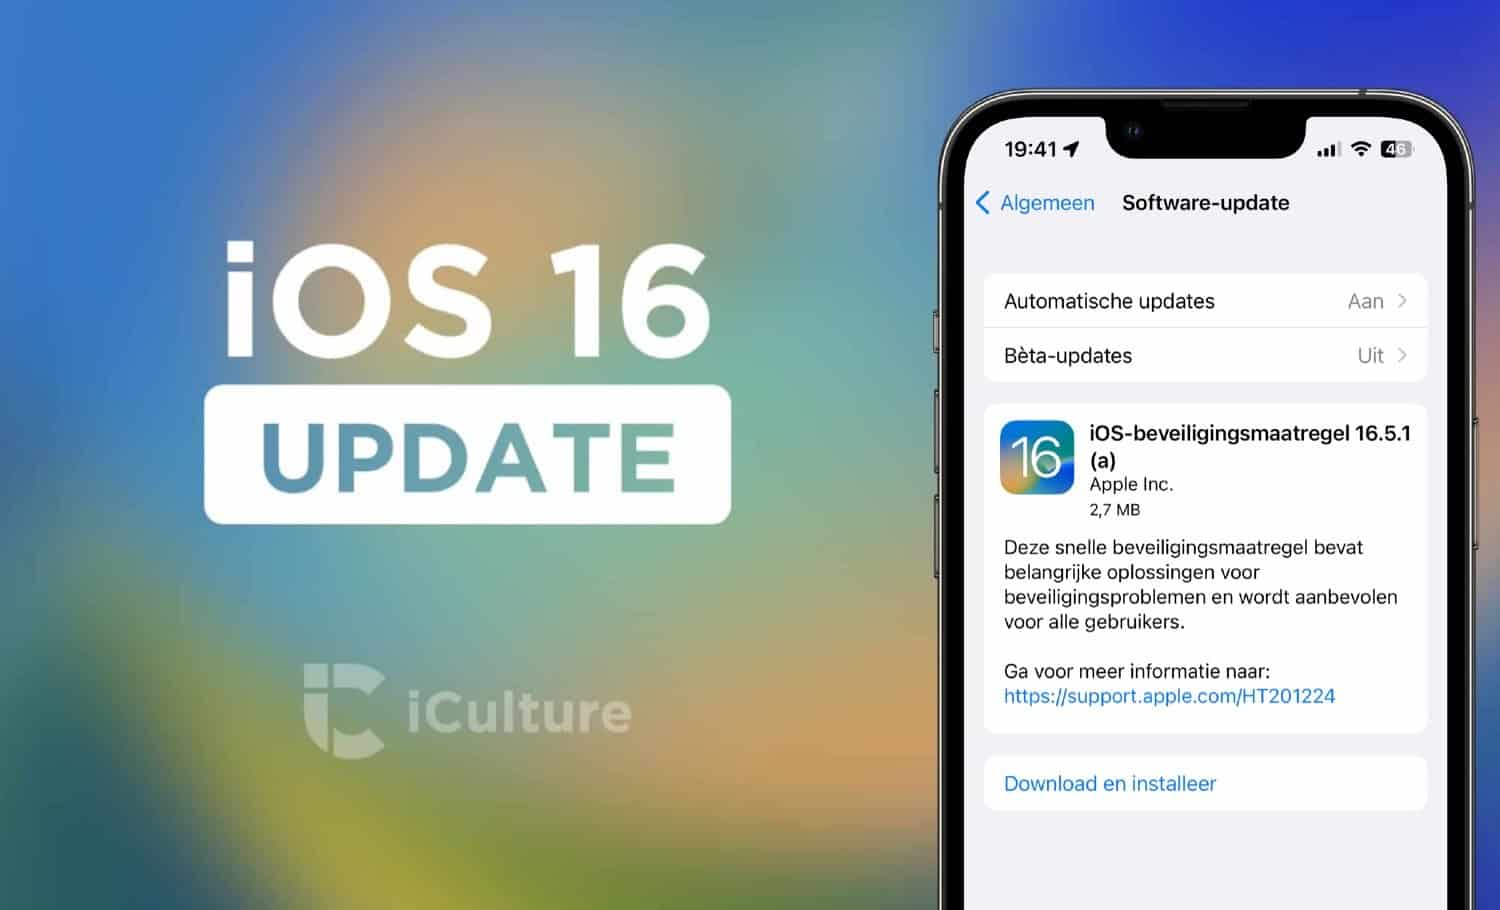 Apple iOS 16.5.1 (a) snelle beveiligingsupdate